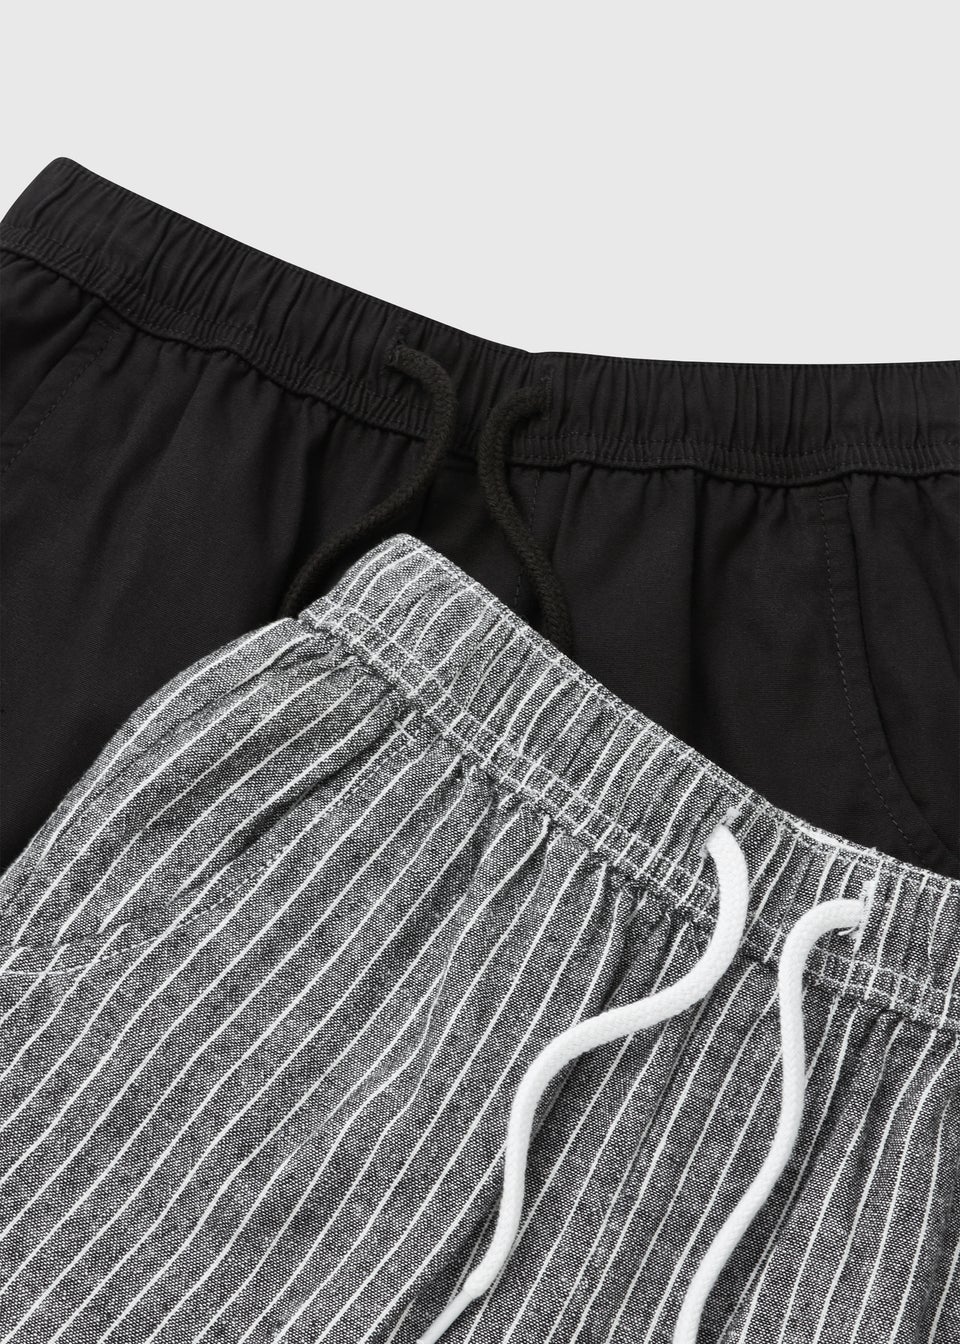 Boys 2 Pack Black & Grey Woven Shorts (7-13yrs)